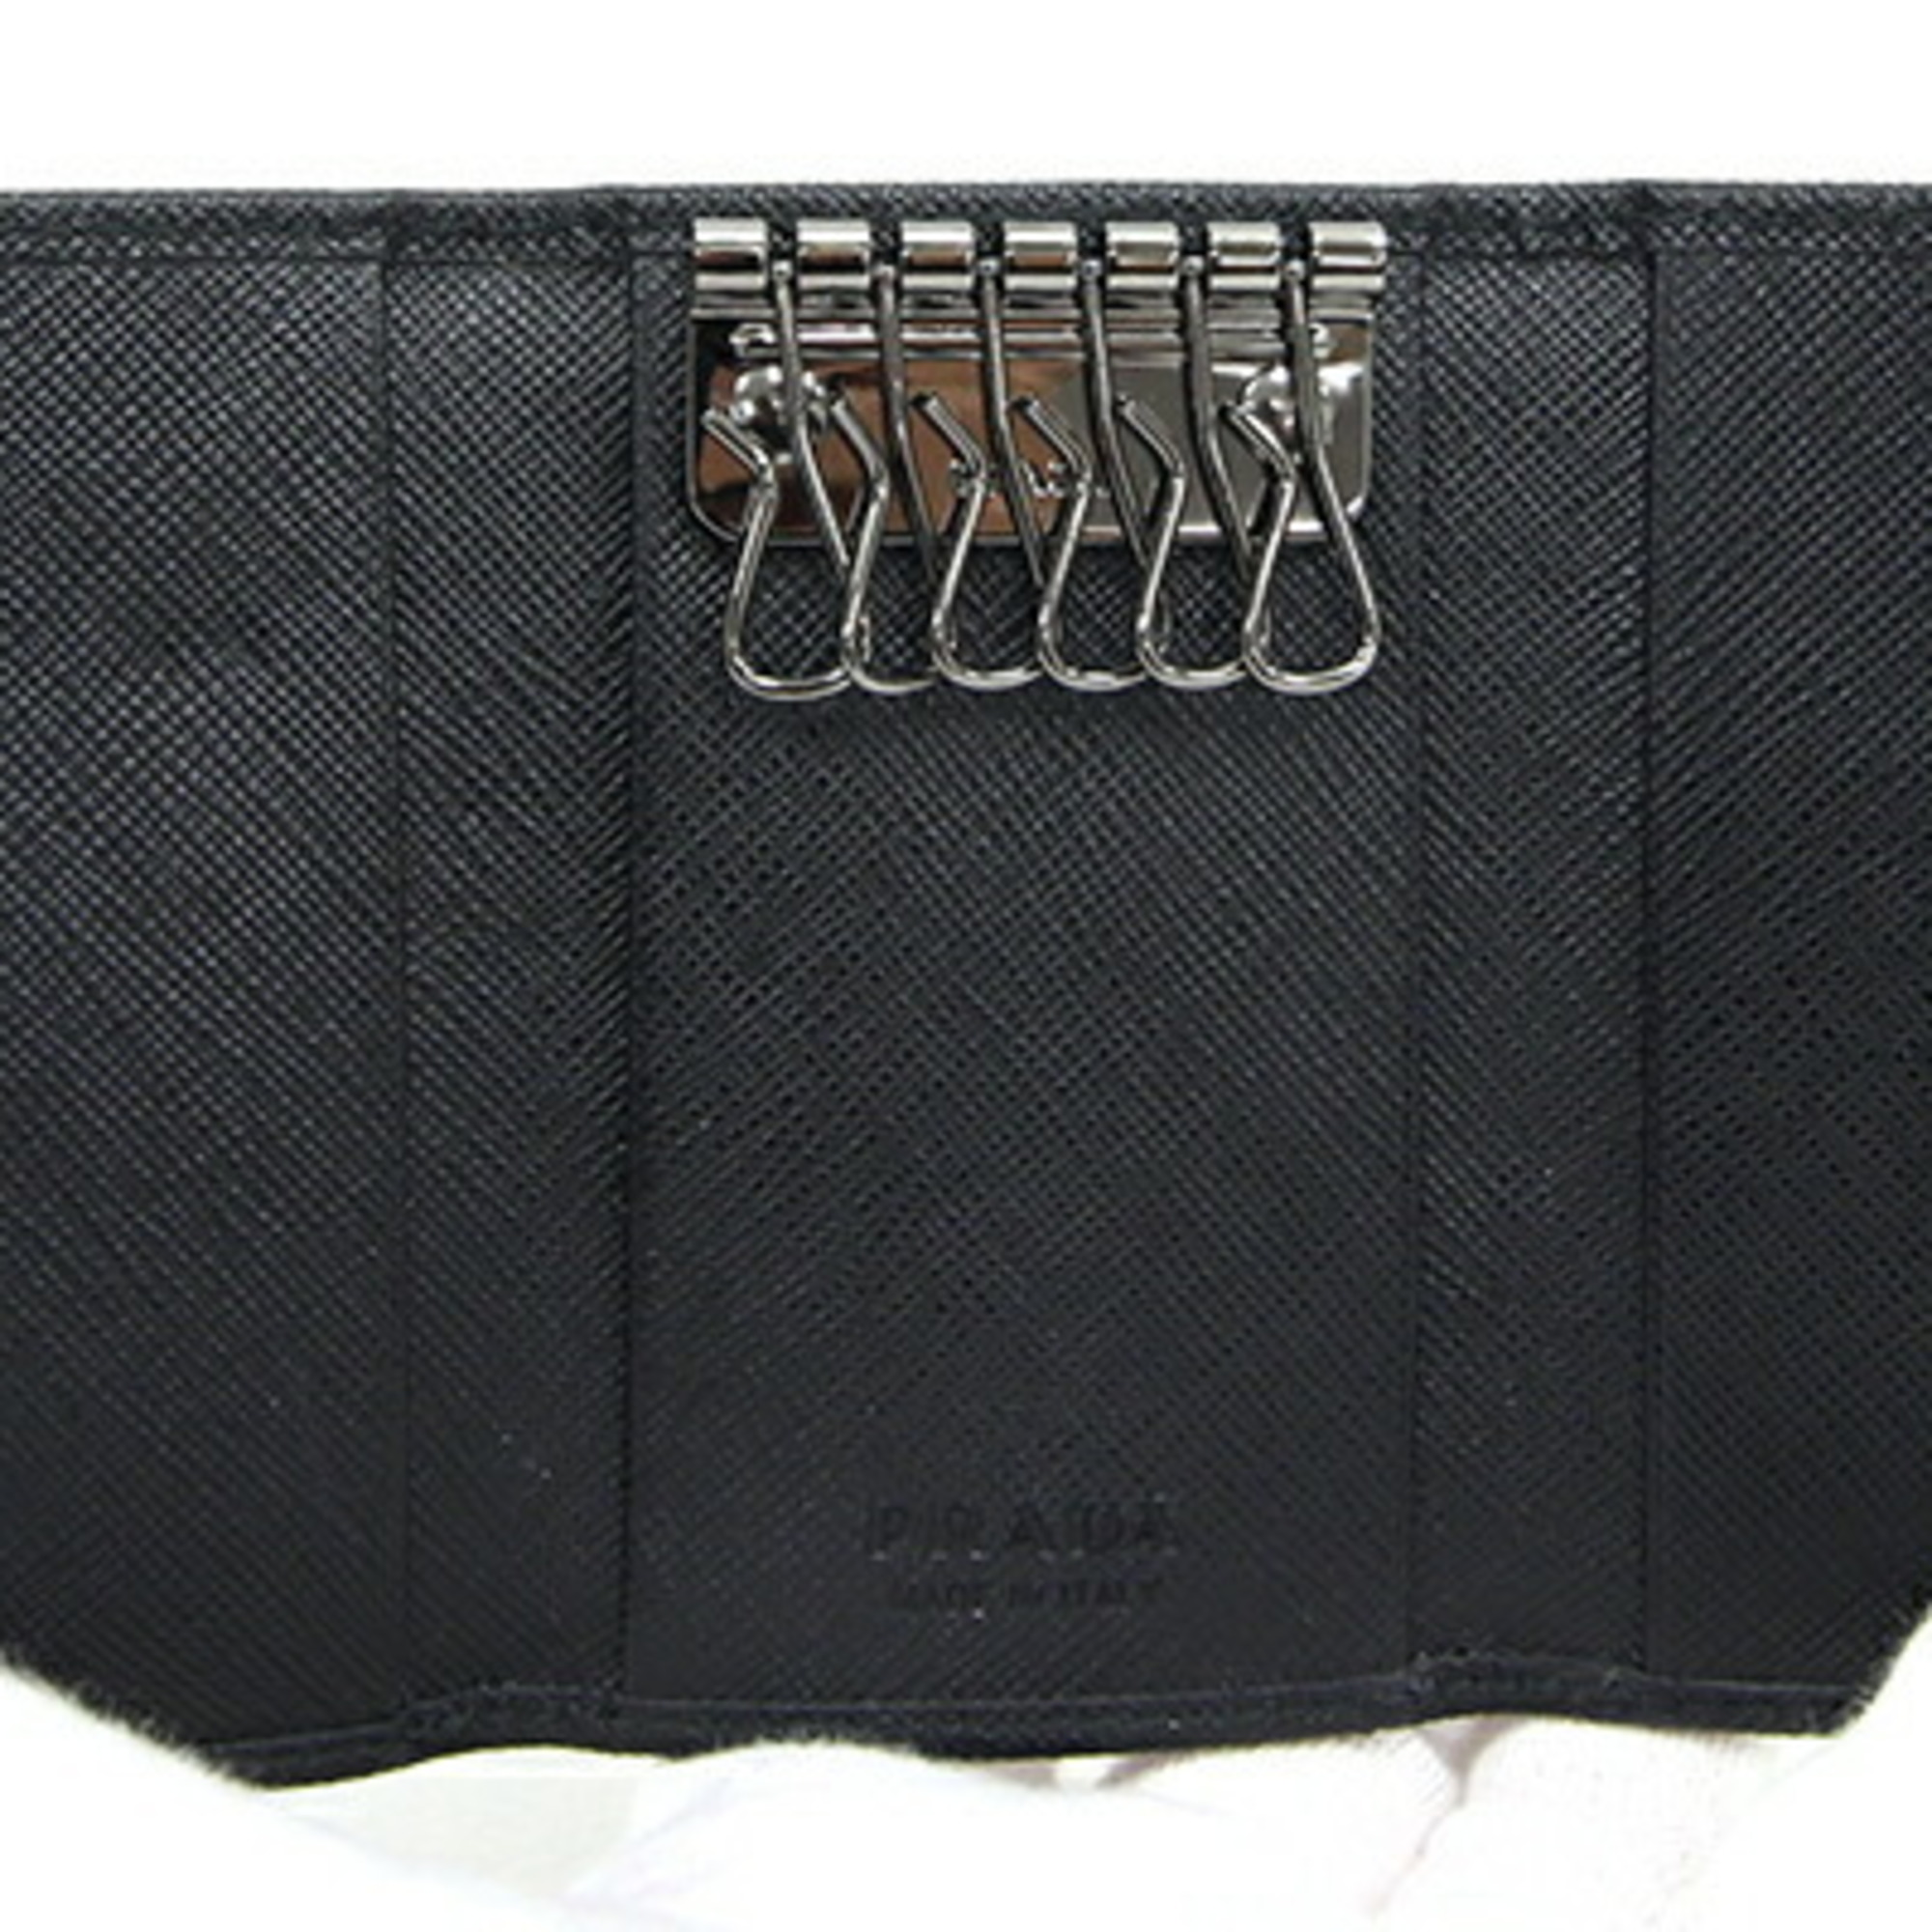 Prada 6-Key Case 2PG222 Black Leather Key Holder Keys Men's PRADA